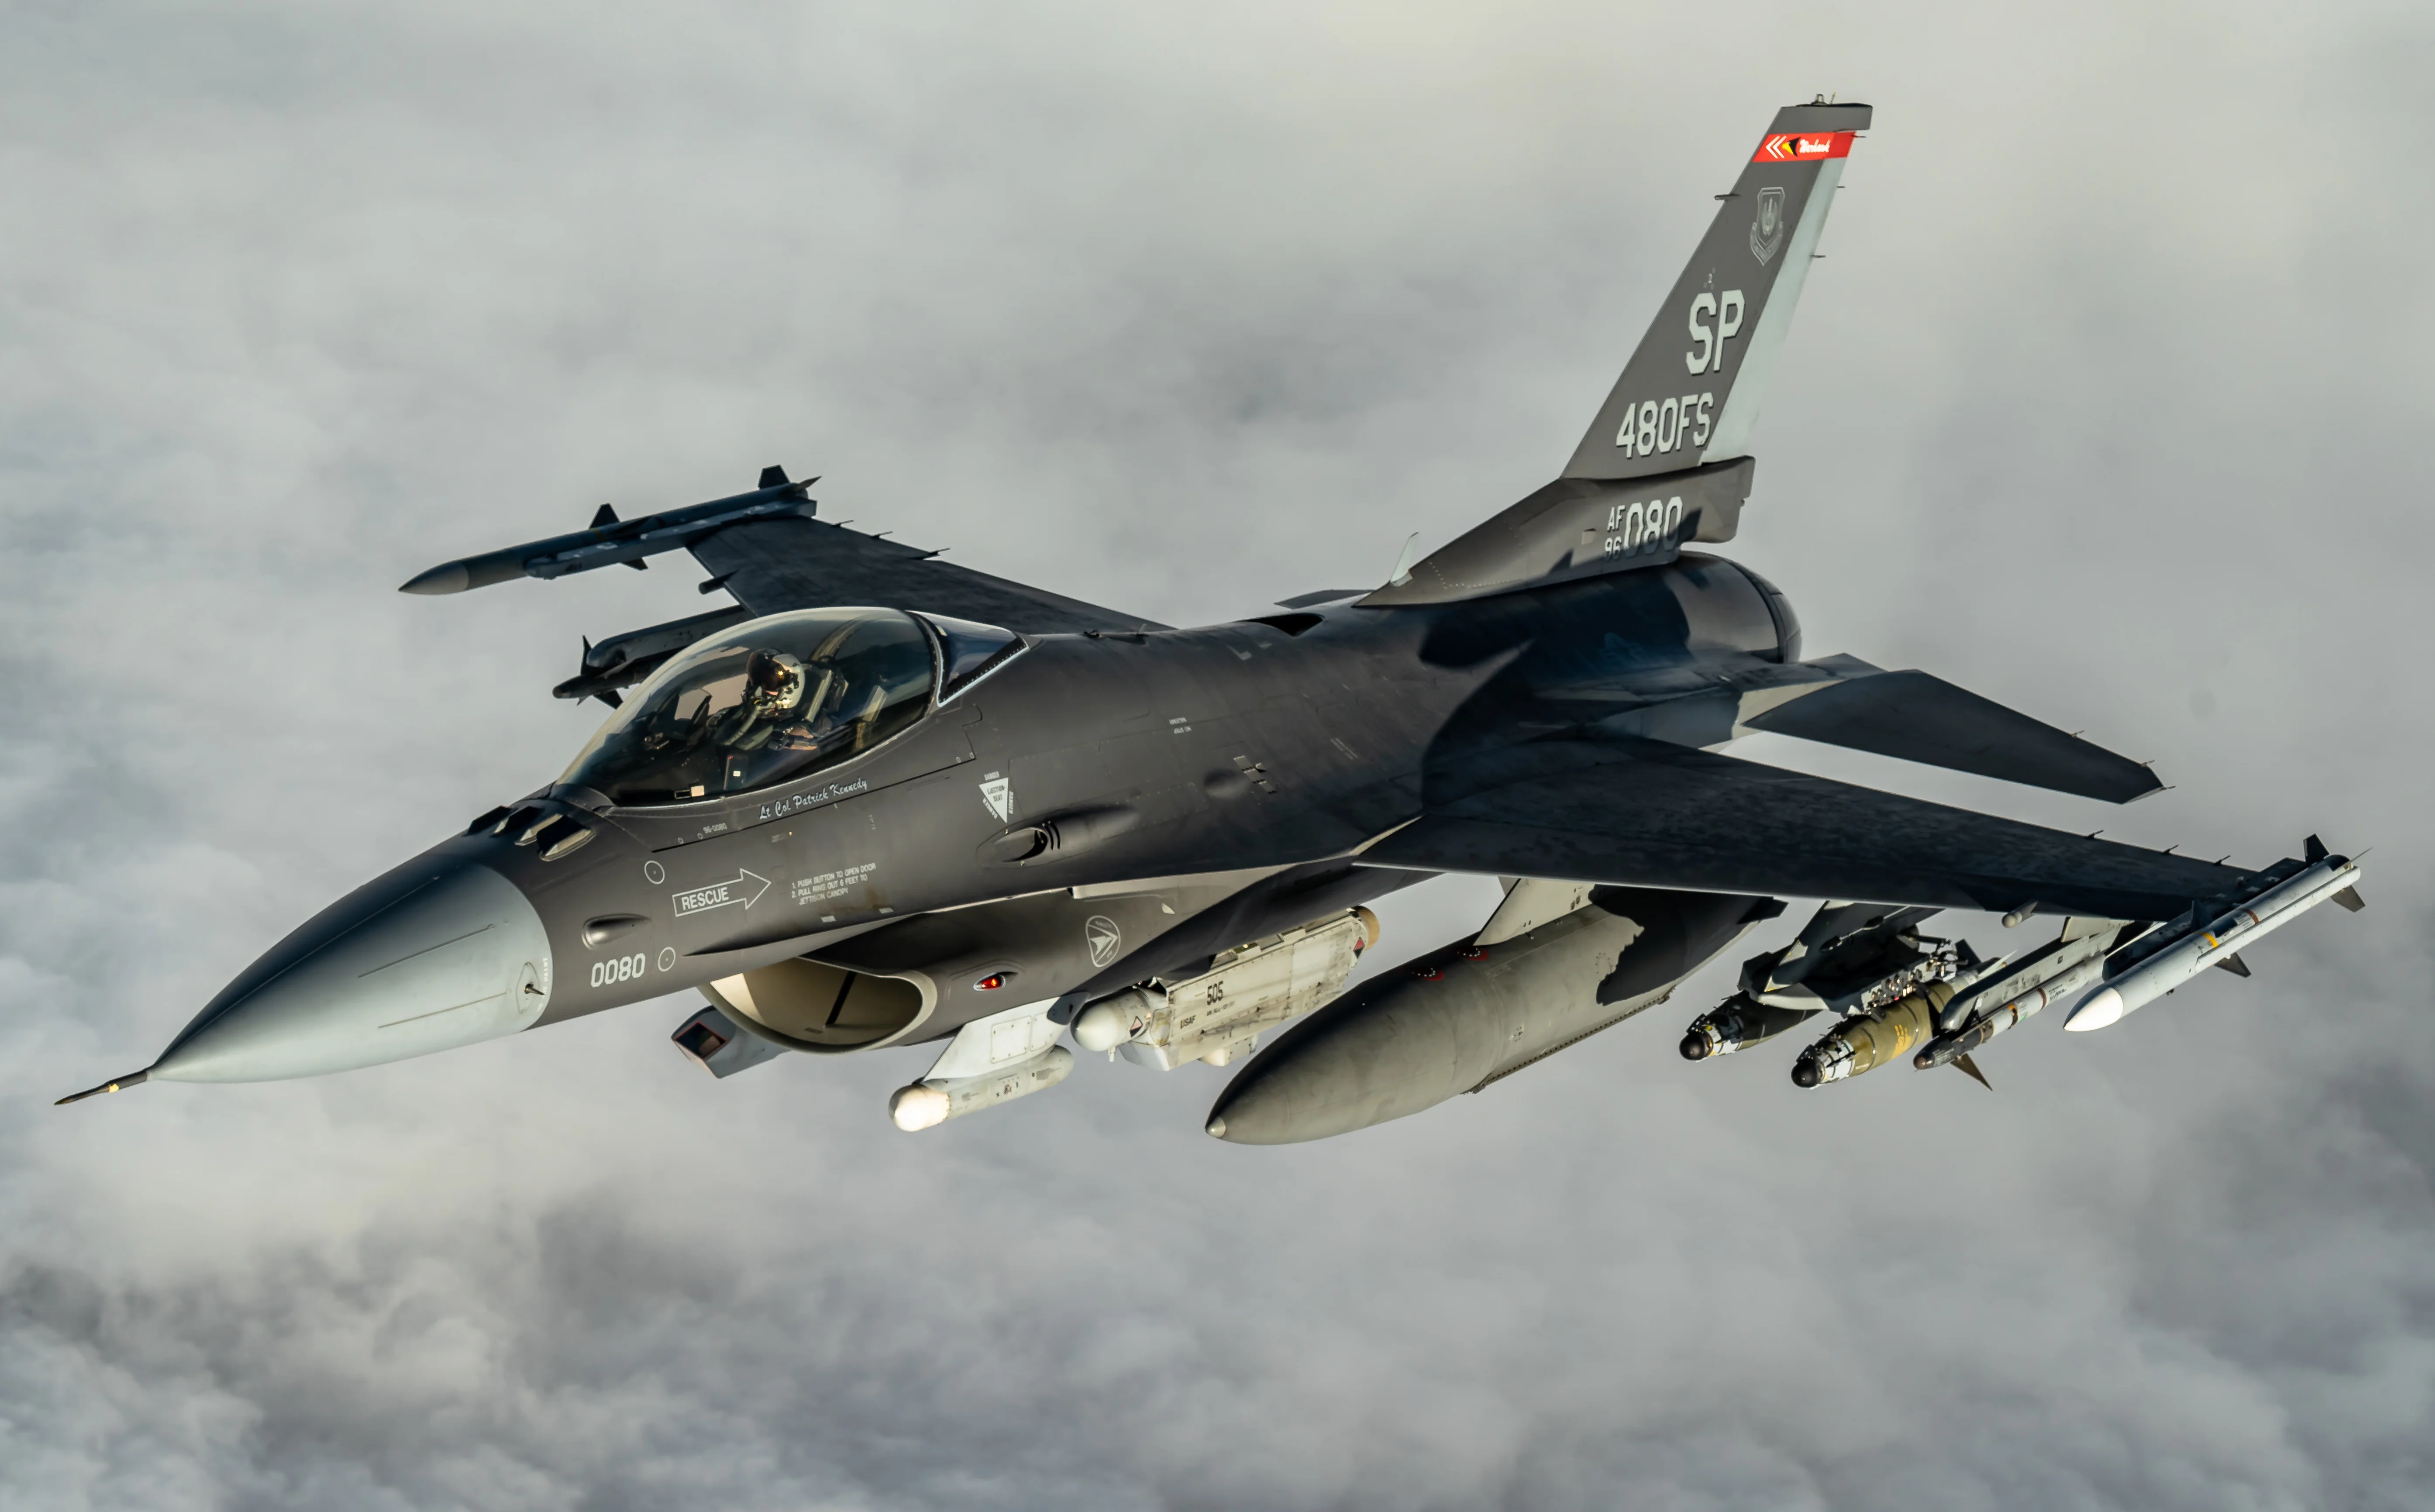 Stíhačka F-16: nové radary, systémy elektronického boje a stealth nátěr